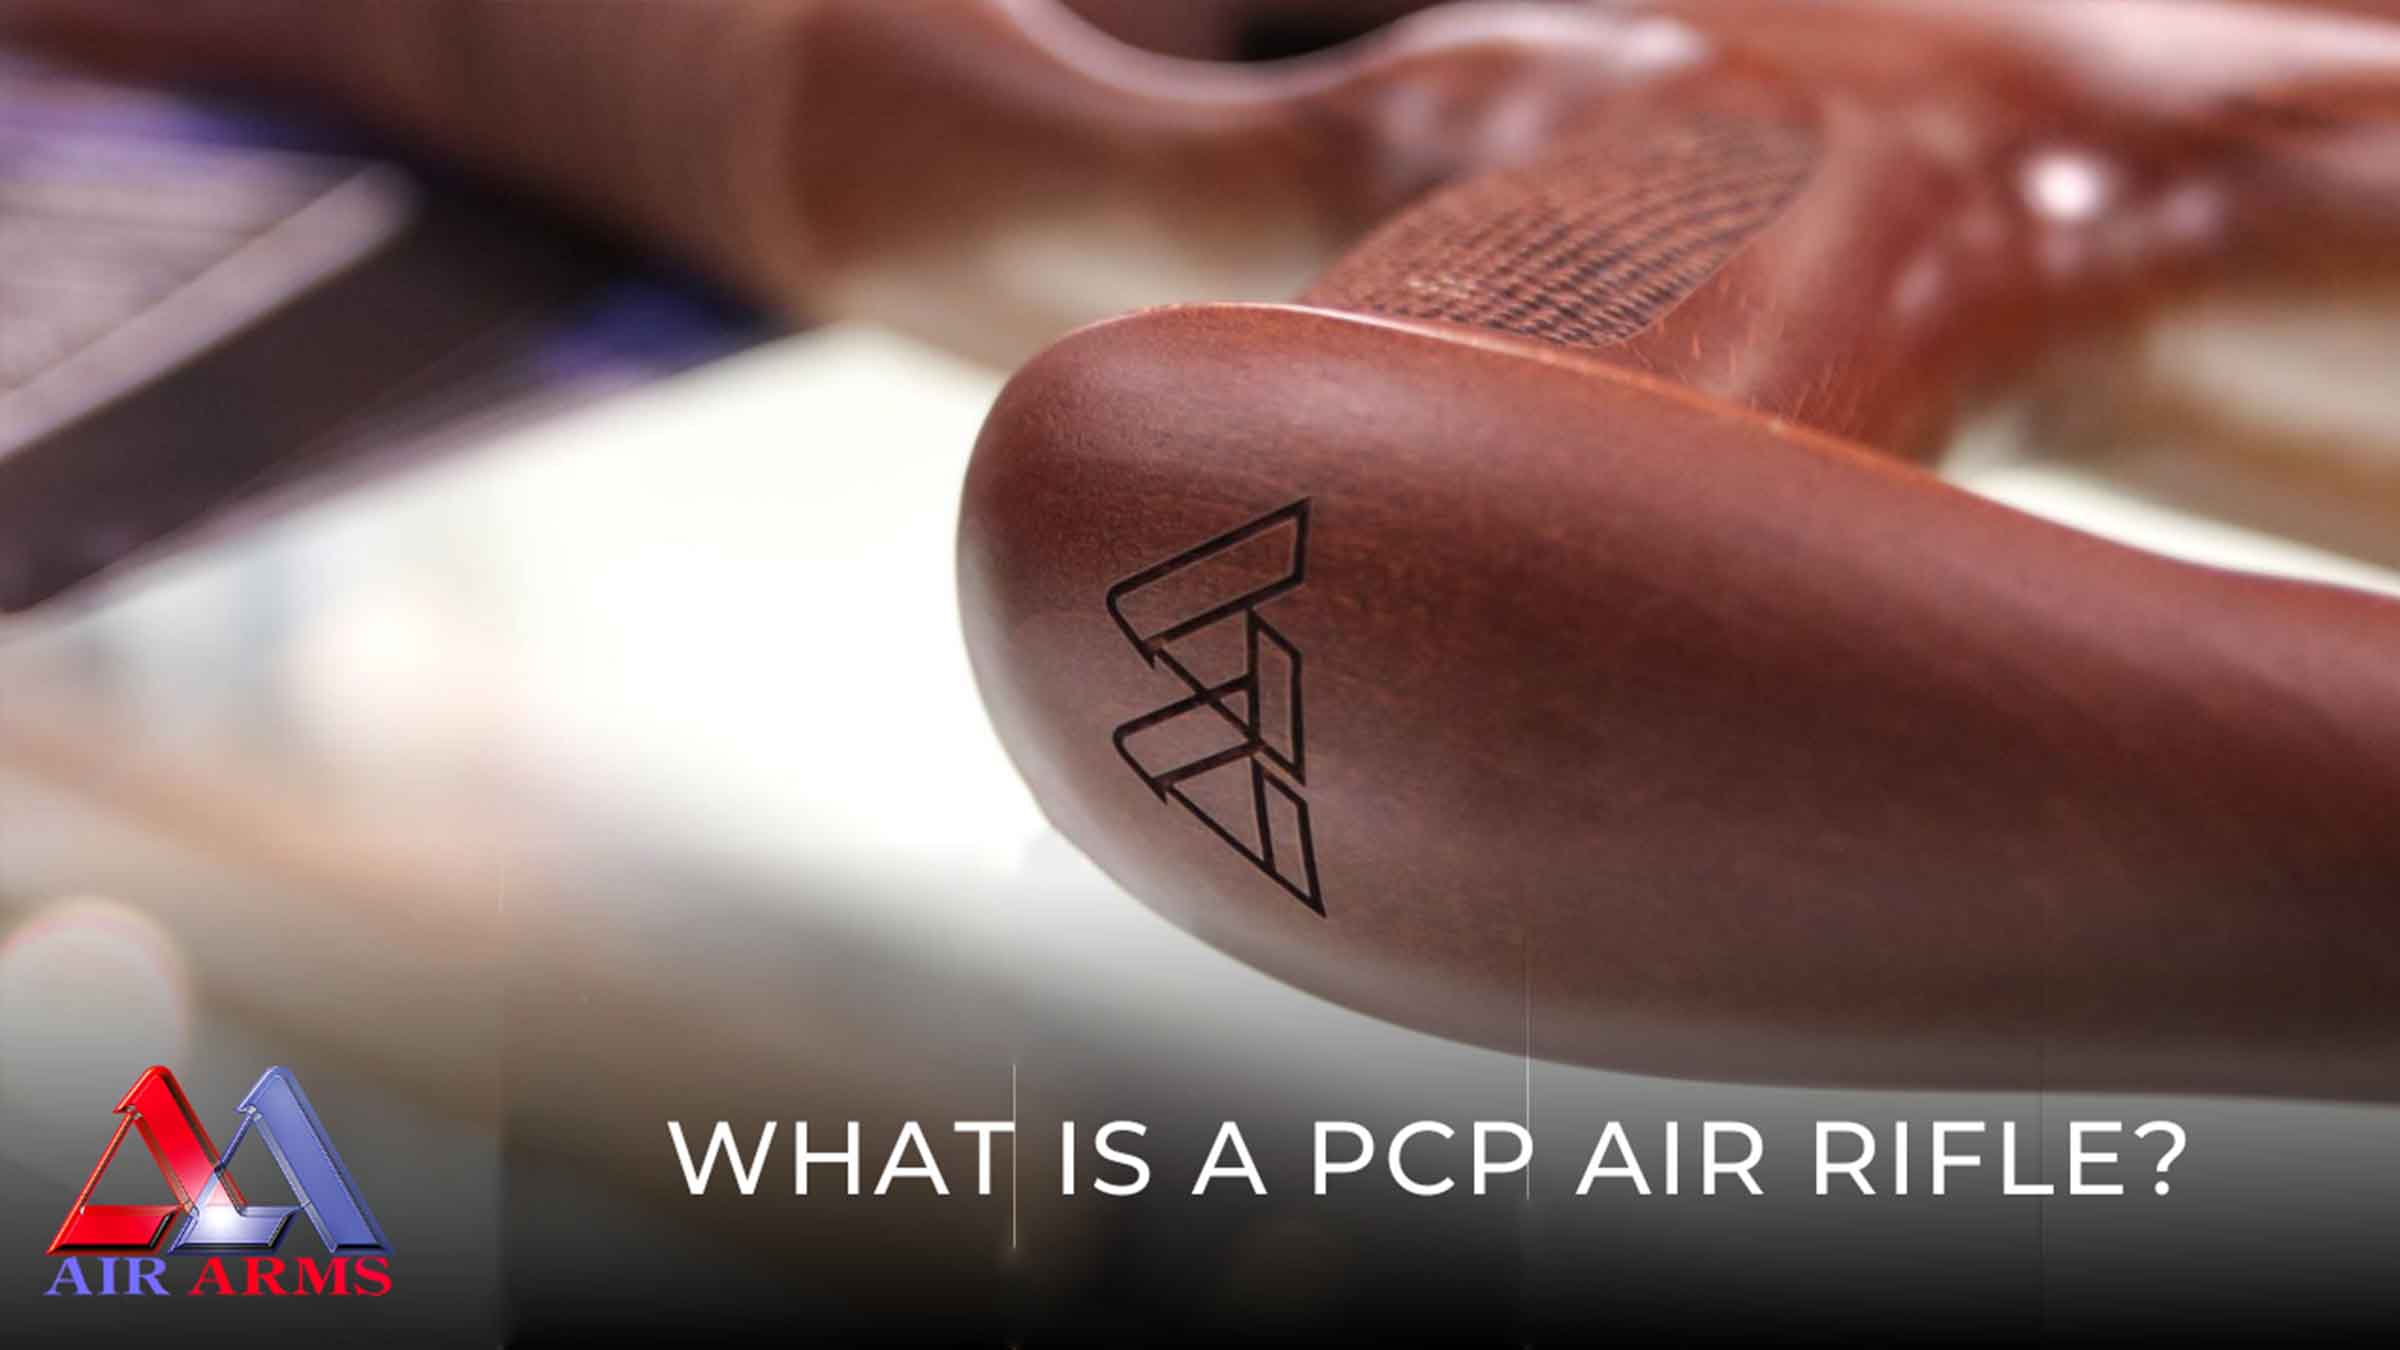 What is a PCP air rifle?